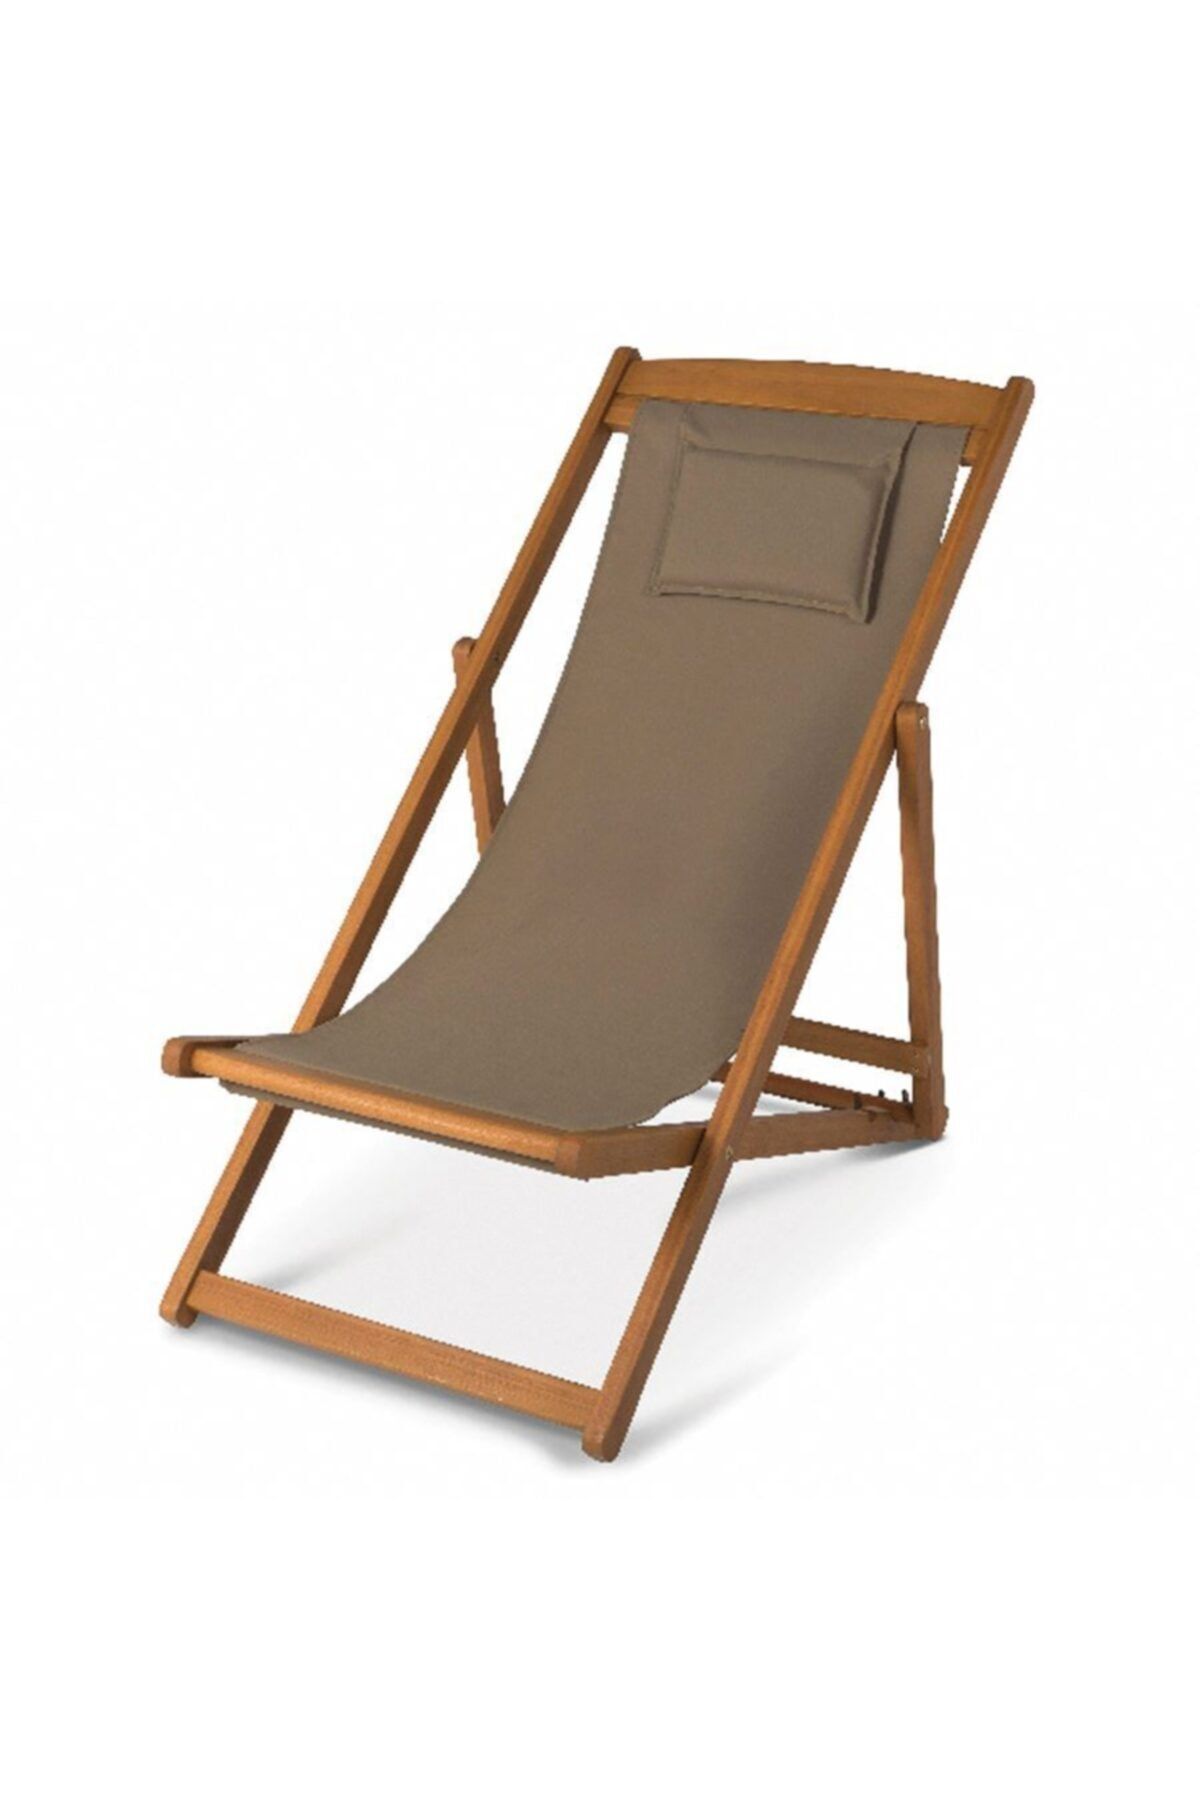 Blooma Aland Deck Sandalye Aland Deck Sandalyenin Rahatlığı Ve Katlanabilir Özelliği Ile Süper